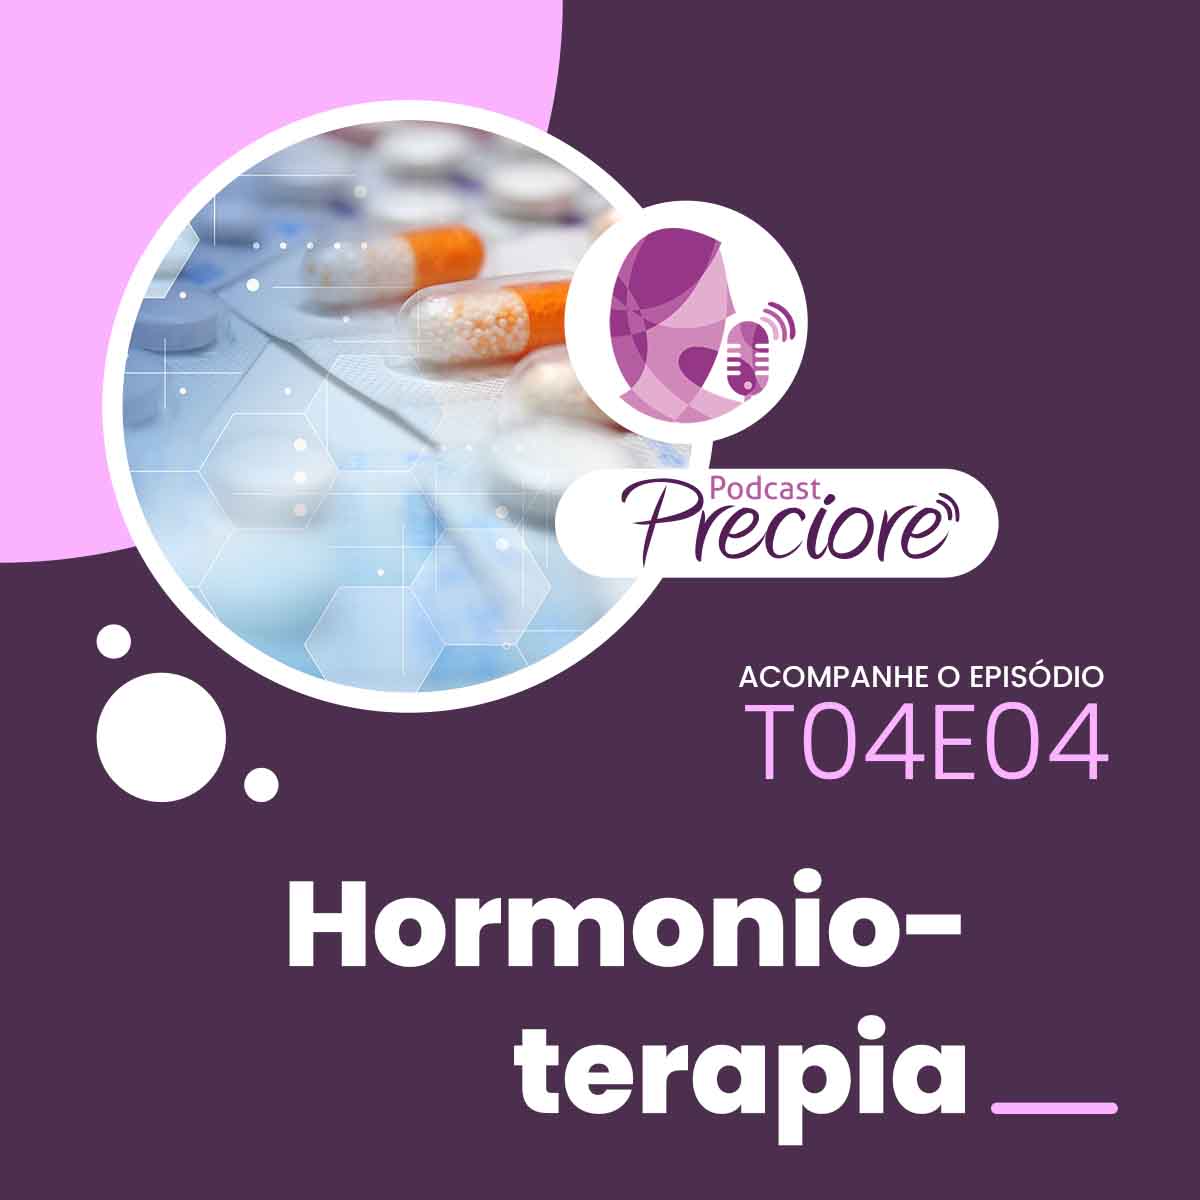 Preciore - T04E04 - Hormonioterapia